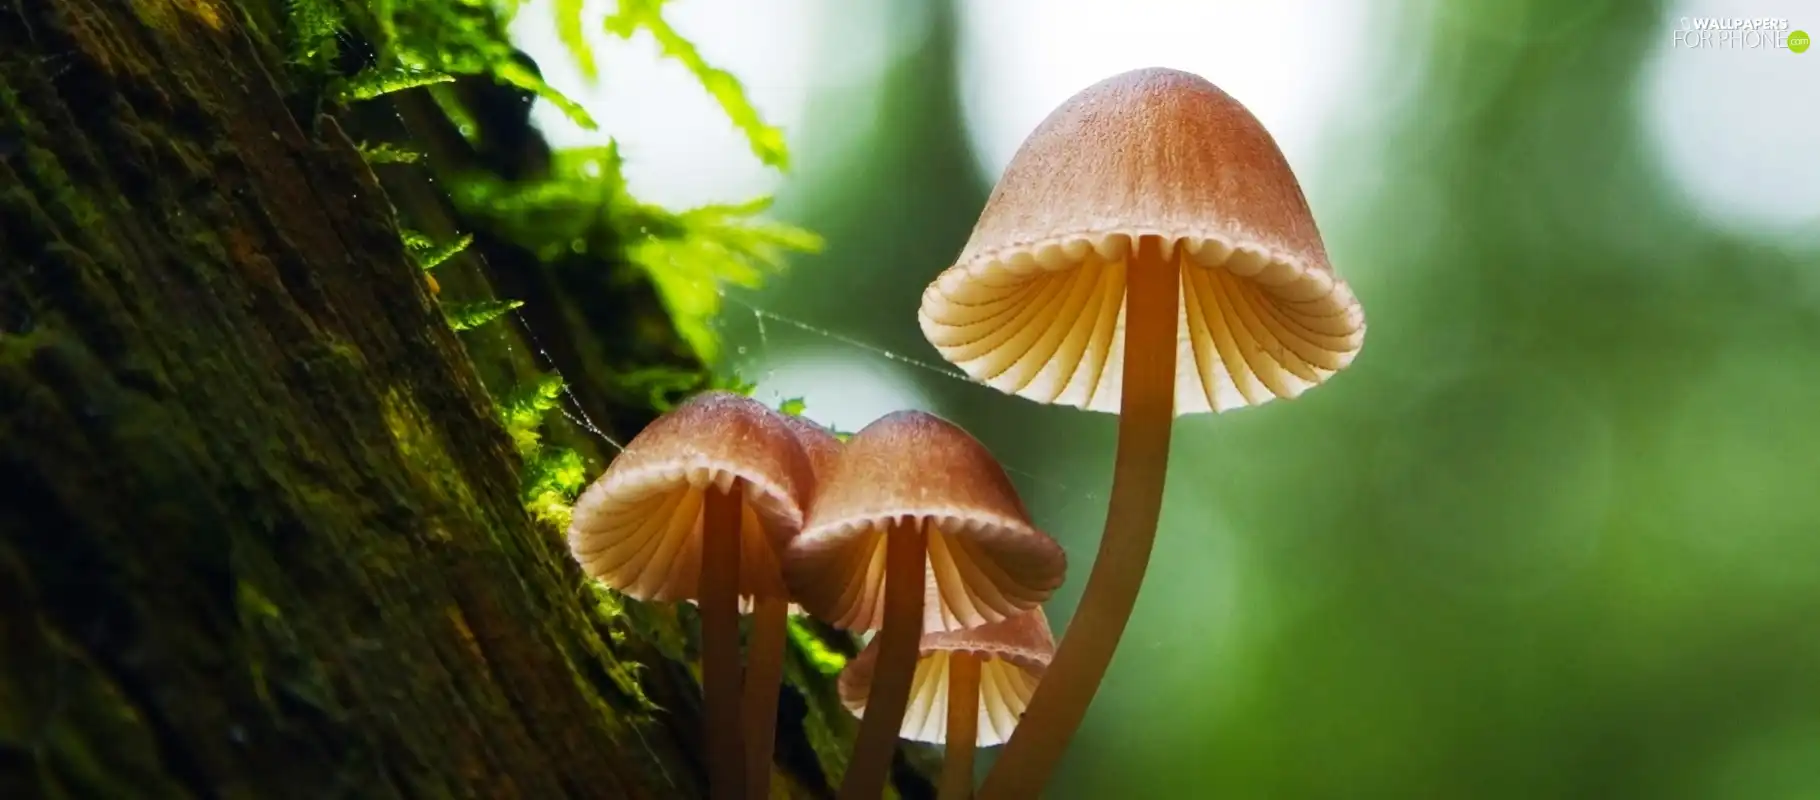 Mushrooms, trees